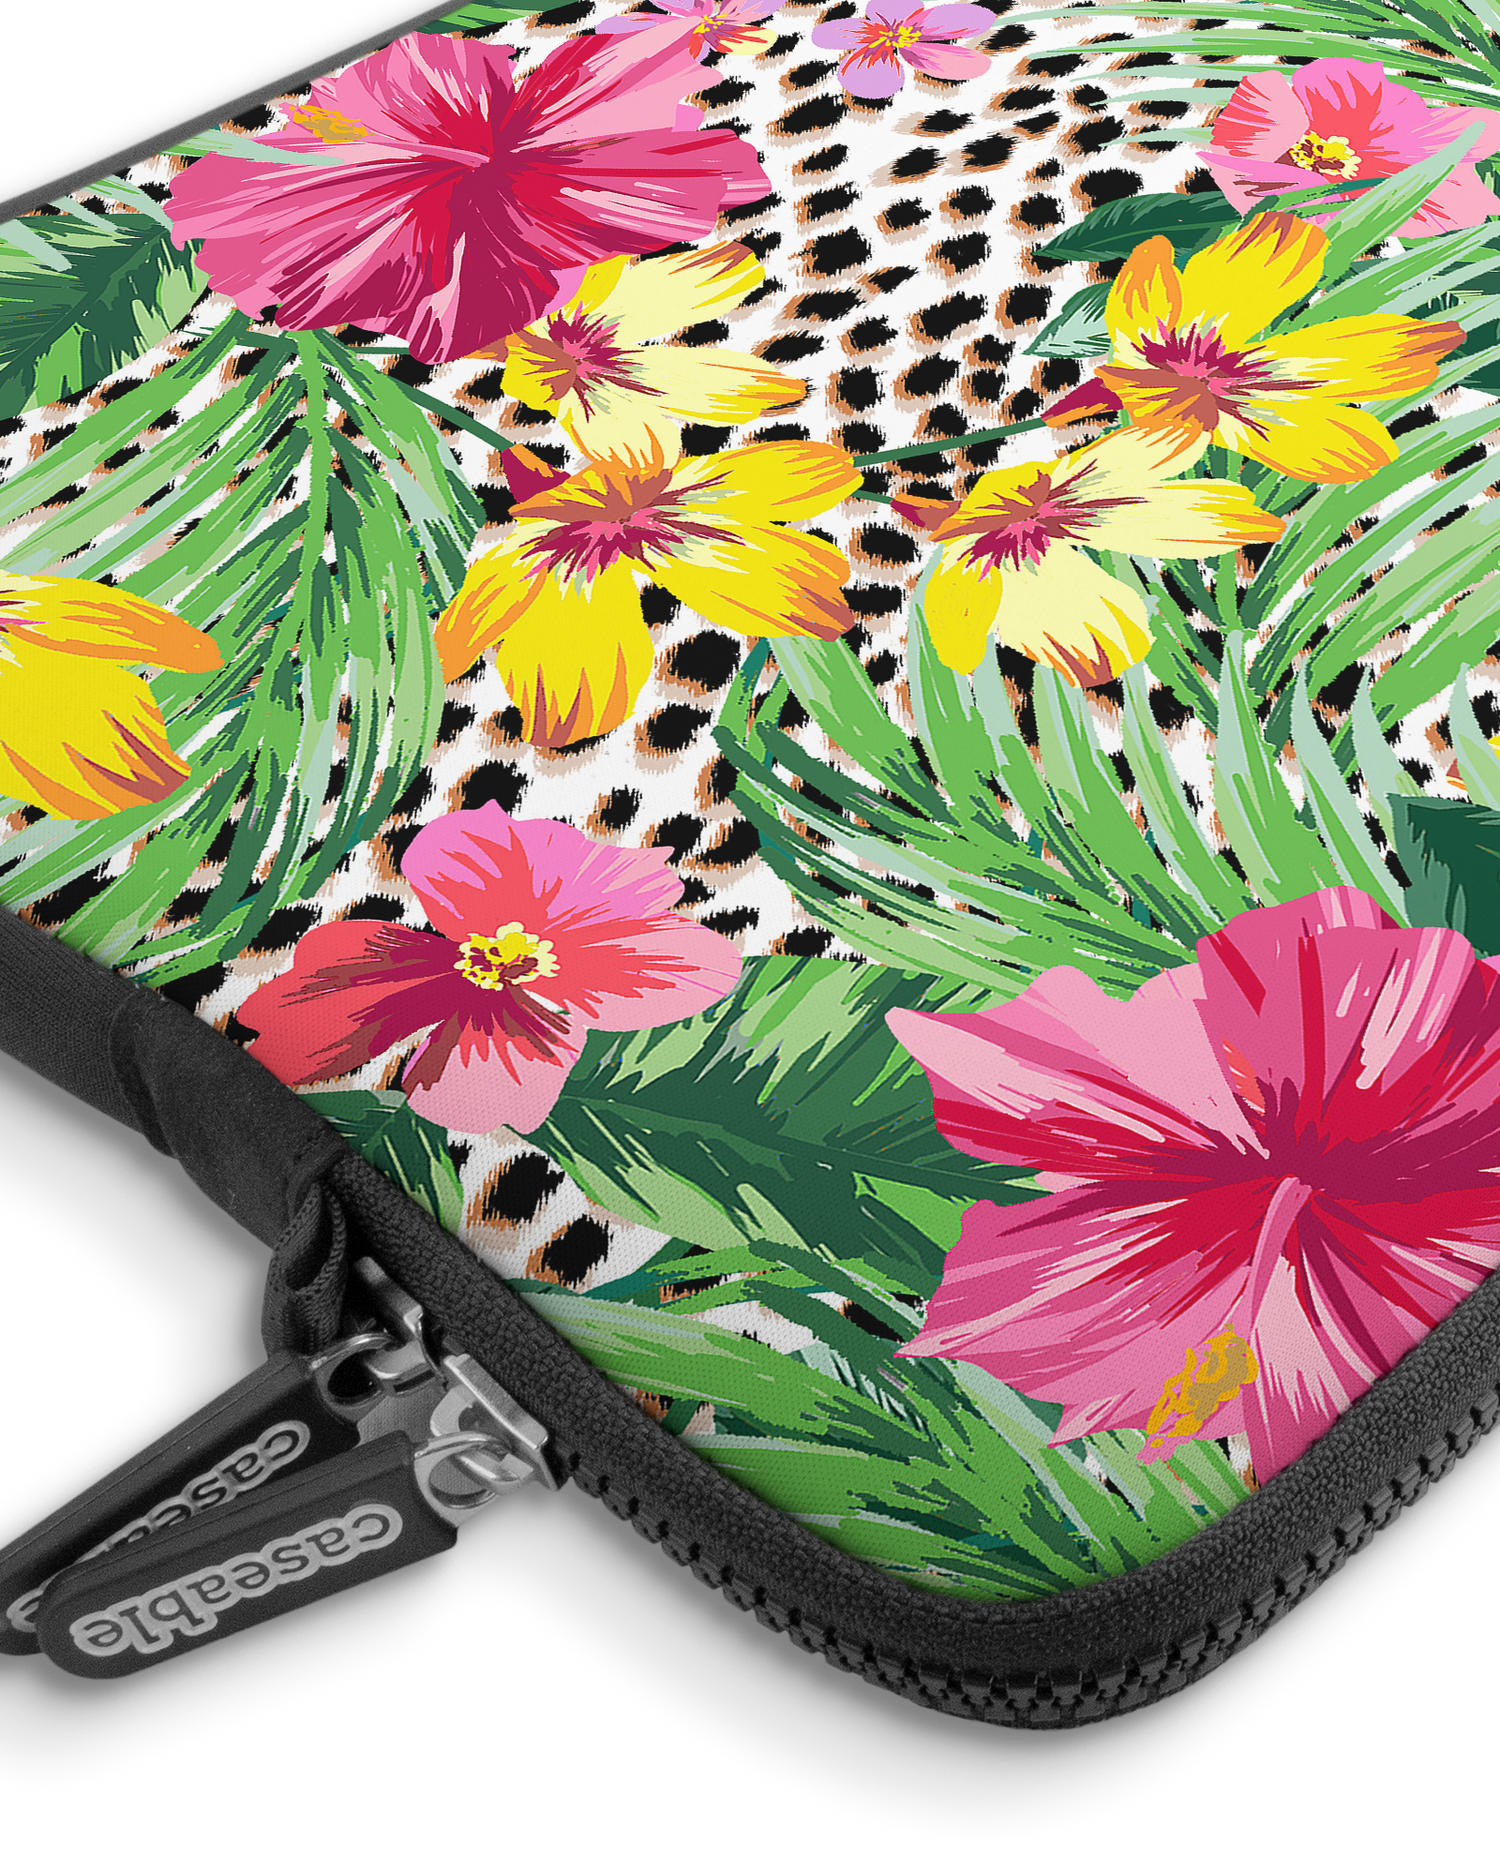 Tropical Cheetah Premium Laptoptasche 13-14 Zoll mit Gerät im Inneren